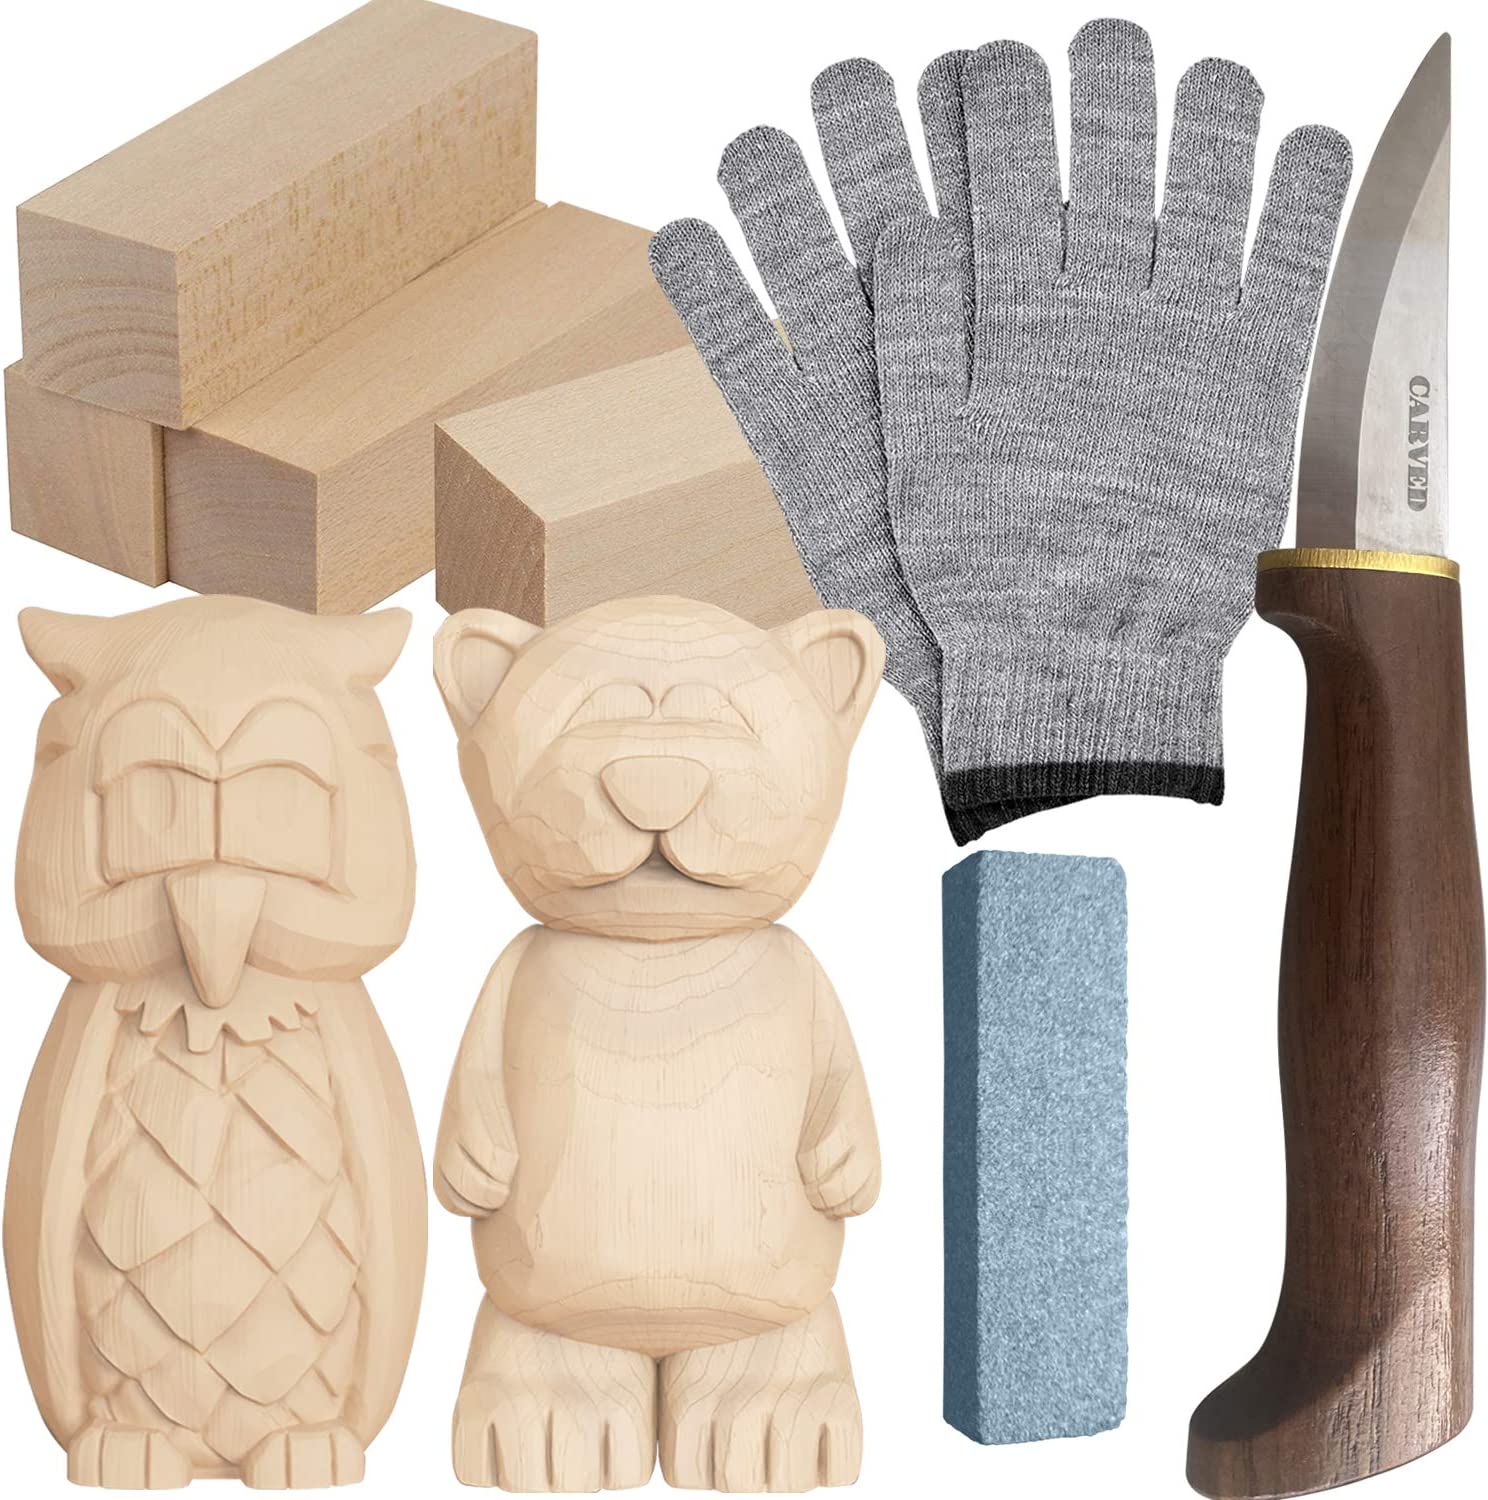 Wood Carving Kit – Wood Spirit